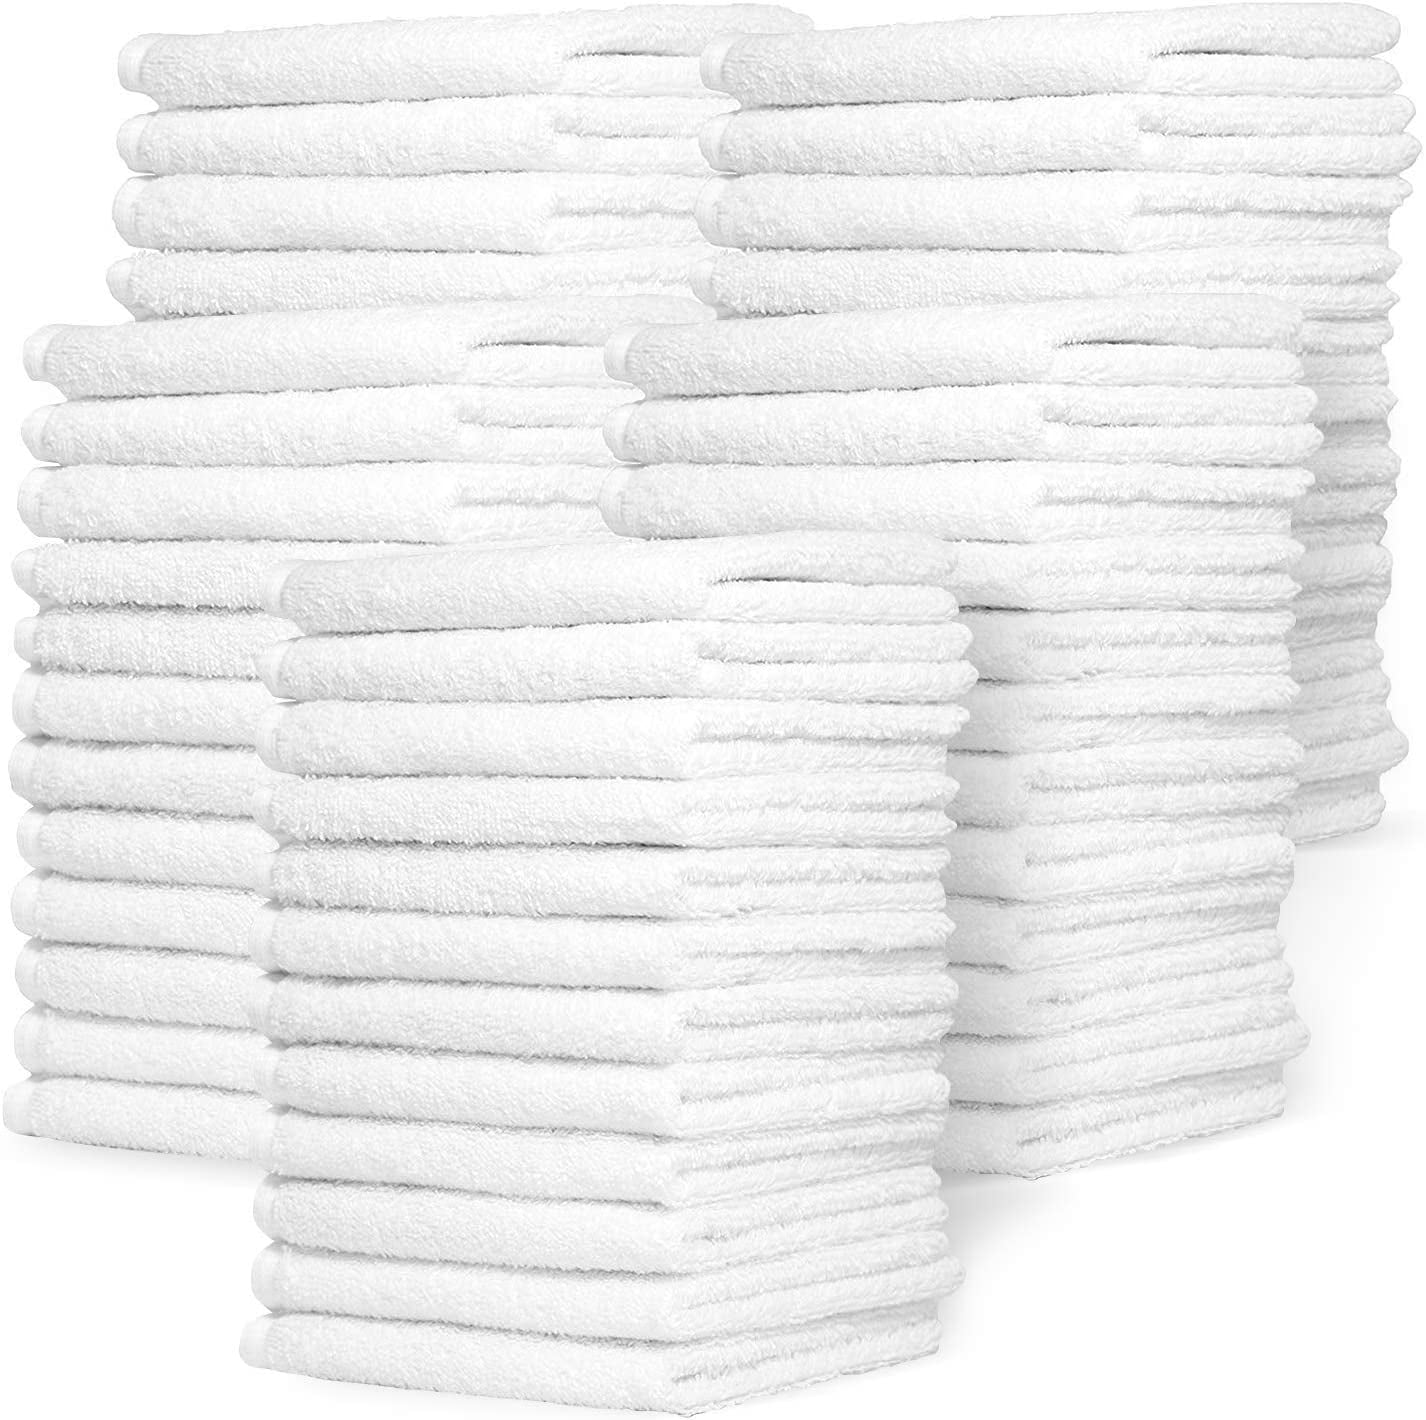 Zeppoli Auto Shop & Car Wash Towels 14 x 17 100% Pure White Cotton 50 Pack 